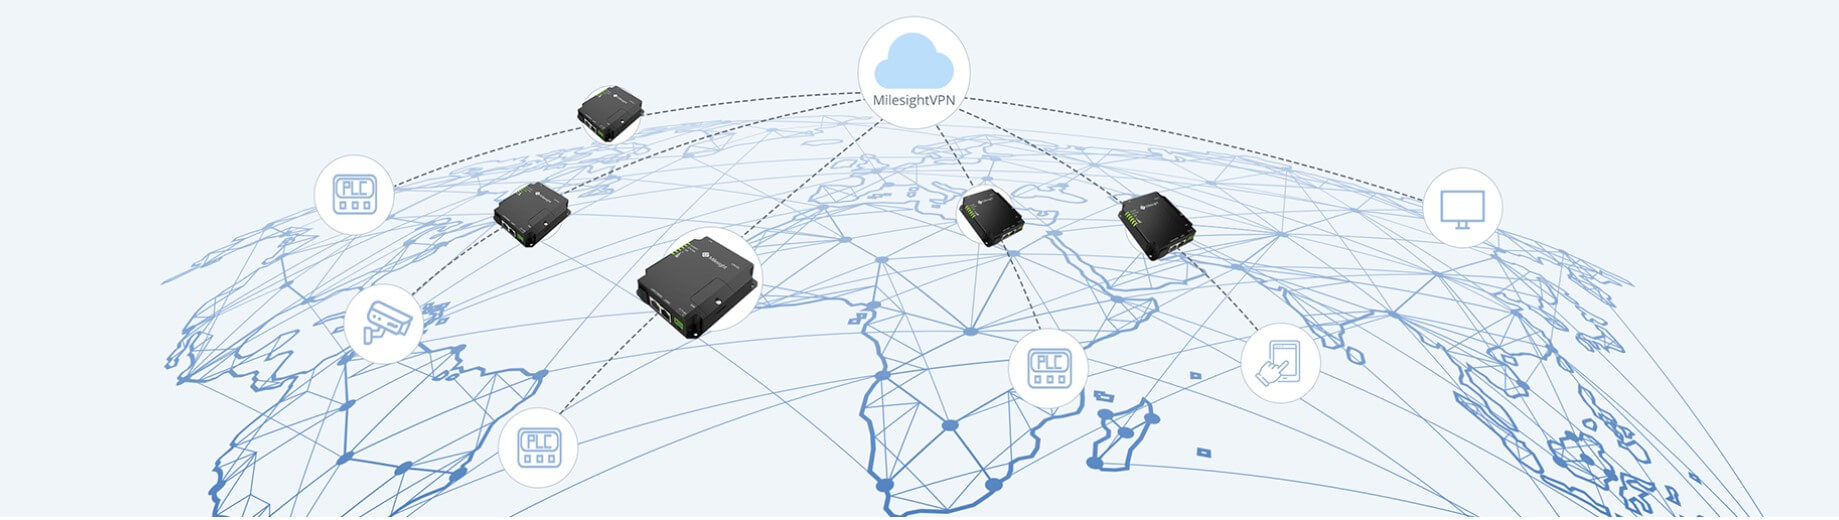 נתב סלולר תעשייתי רשת 4G LTE ניתן לניהול ומאובטח Milesight UR32L-L04EU (4)